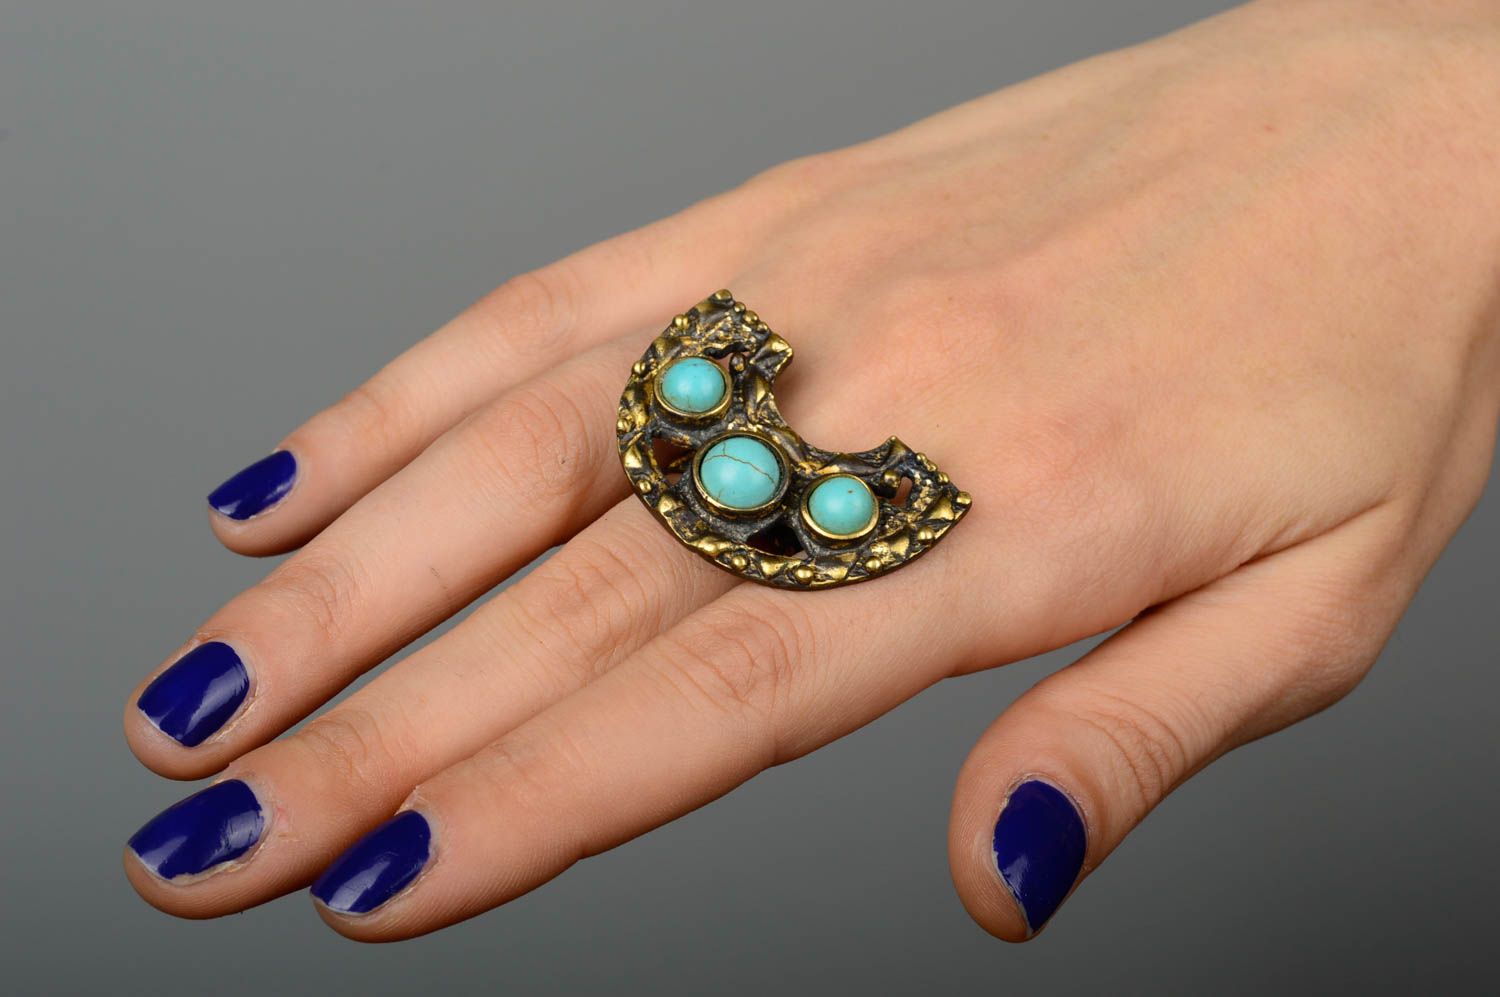 Handmade massive bronze ring jewelry with natural stone beautiful elegant ring photo 2